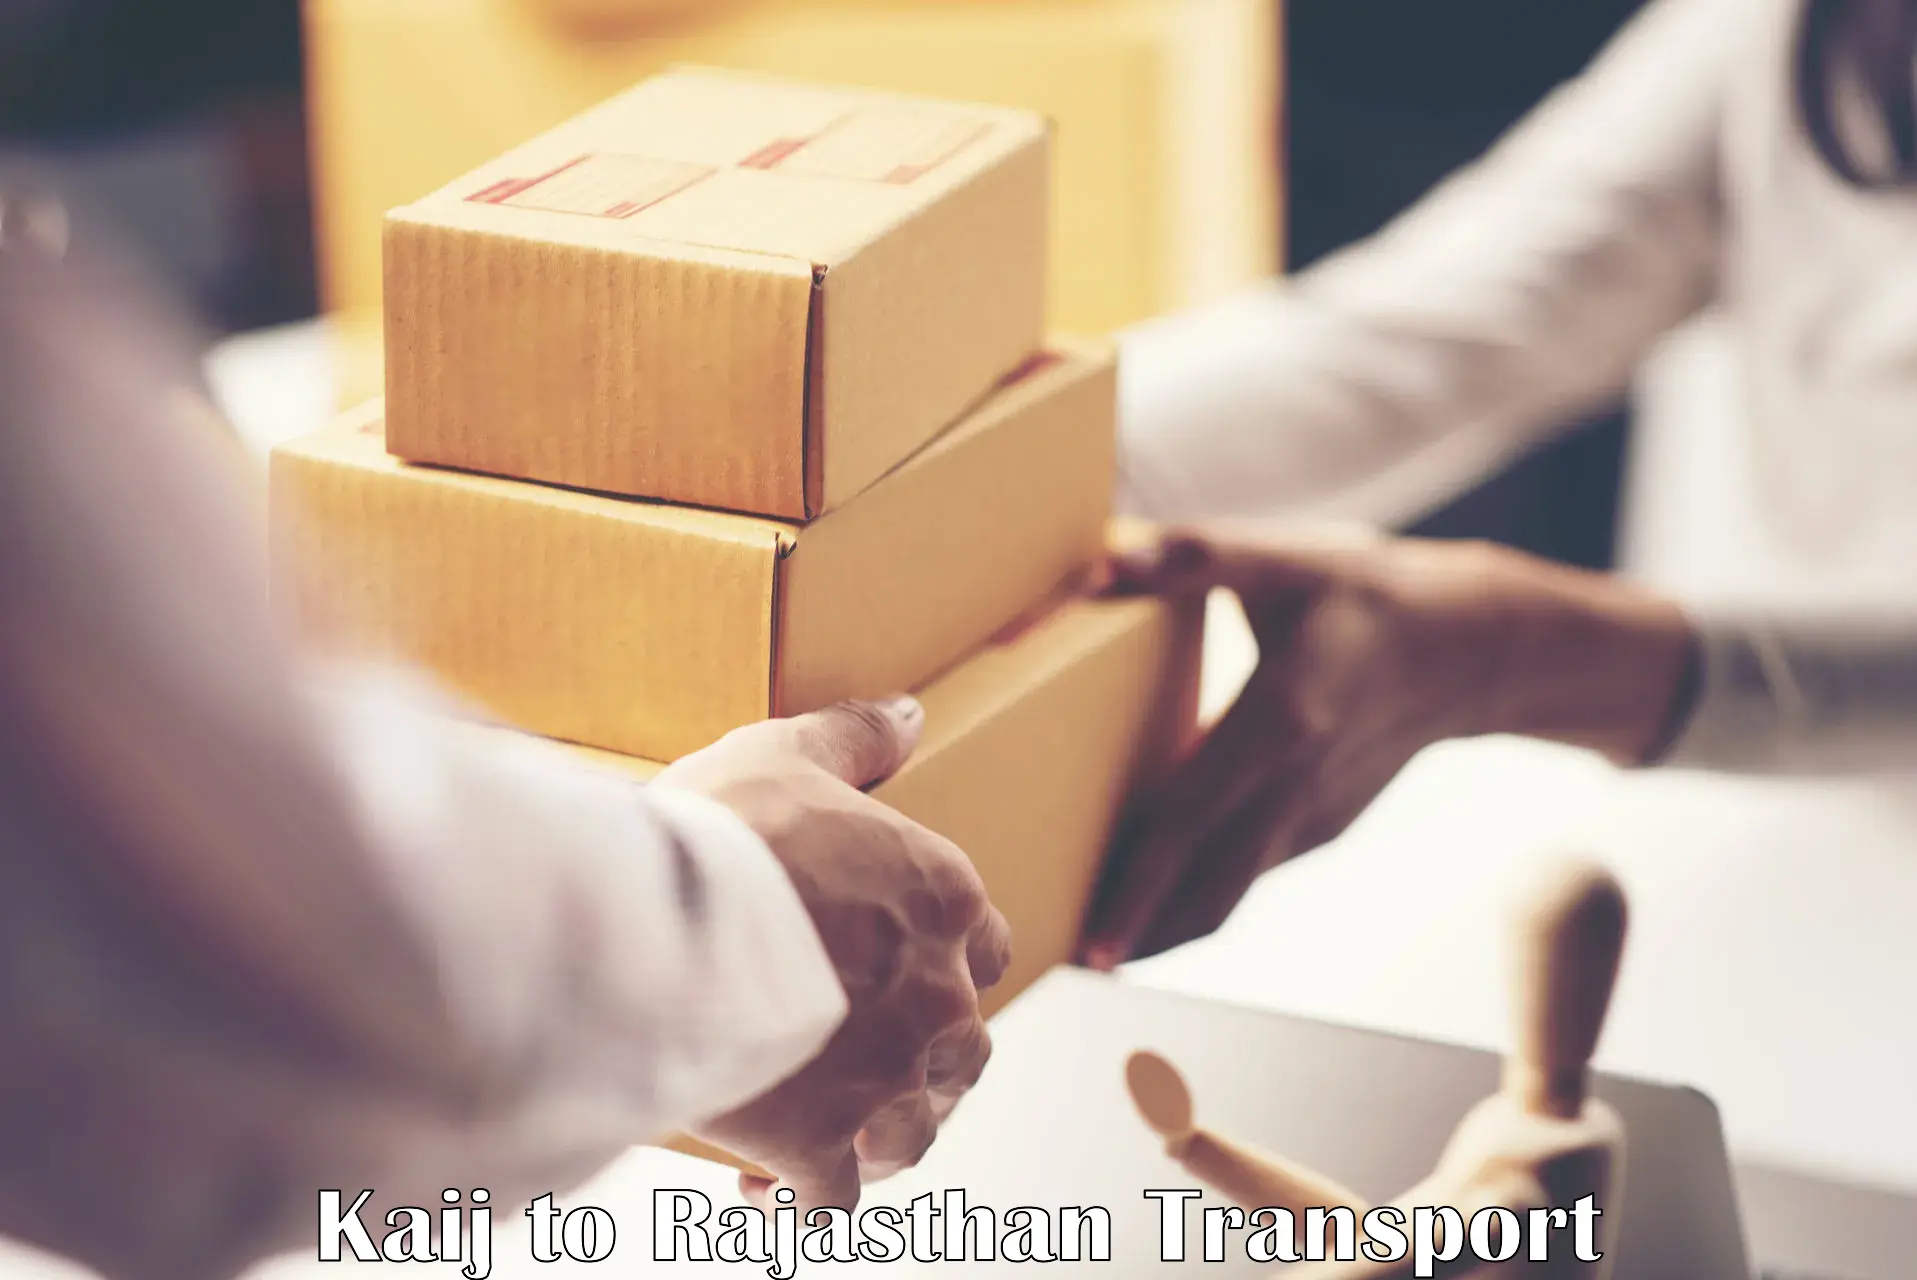 Shipping partner Kaij to Beawar